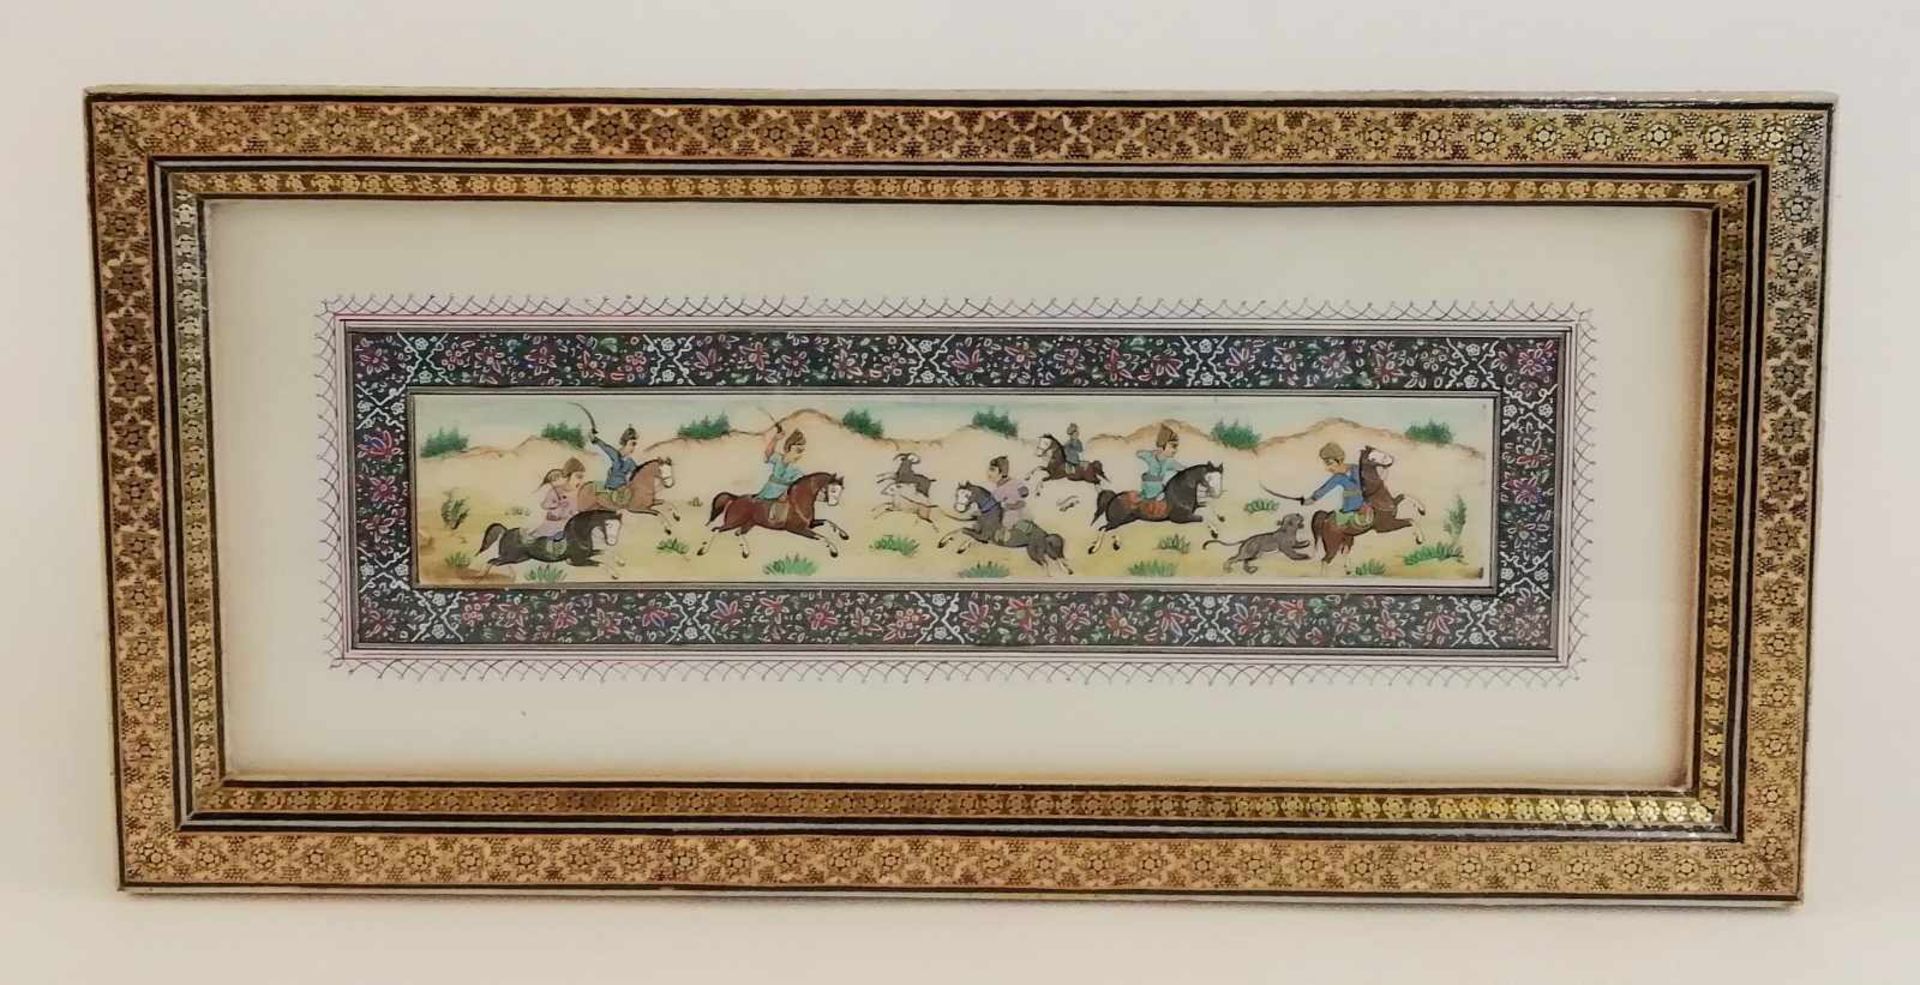 Indien: Dekorative Malerei im indo-persischen MoghJagd-Szene mit 7 Reitern auf der Jagd nach 2